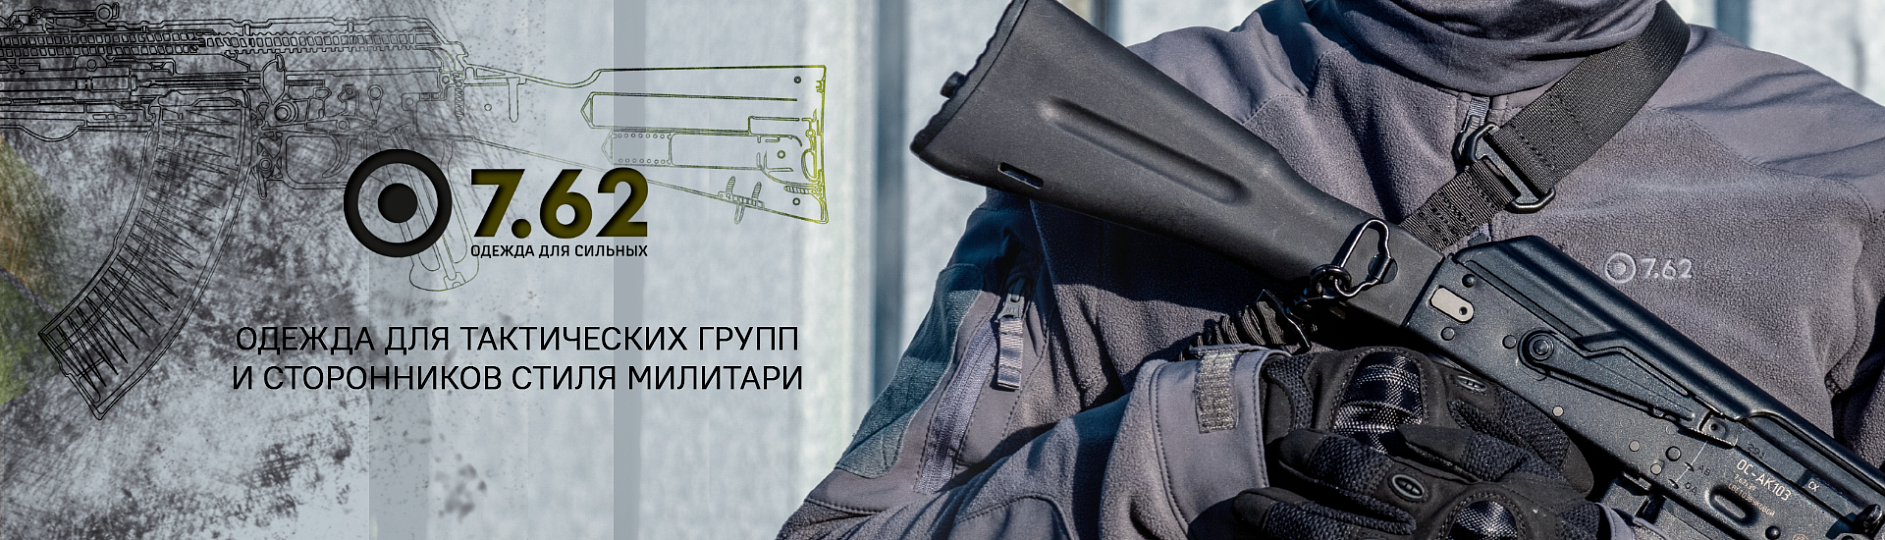 Novatex — одежда для рыбалки и охоты, снаряжение российского производства —Екатеринбург